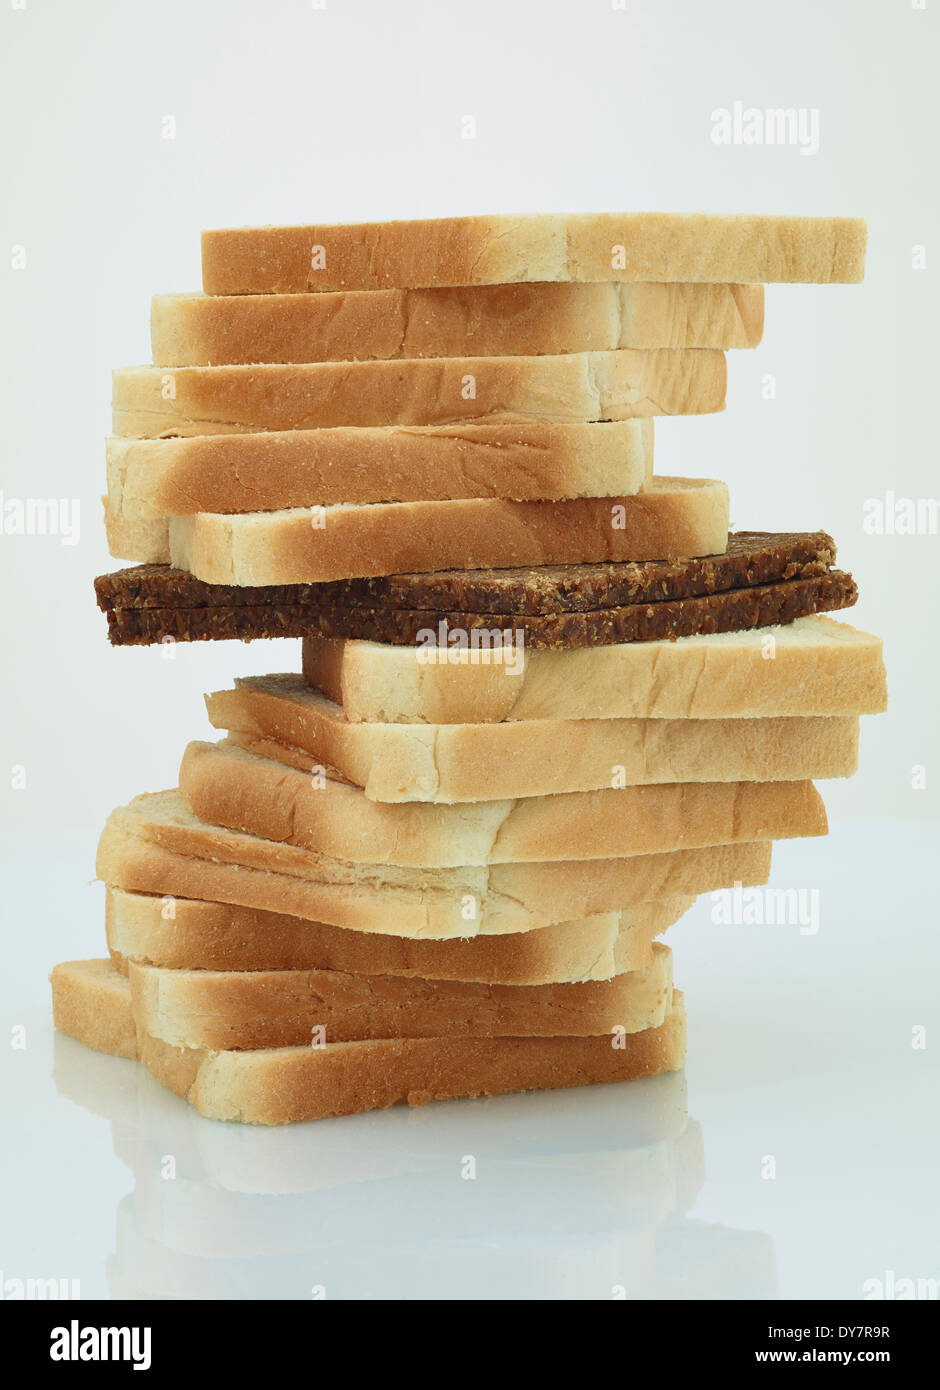 Scheibe Schwarzbrot in einem Stapel von Toast-Brot Stockfoto